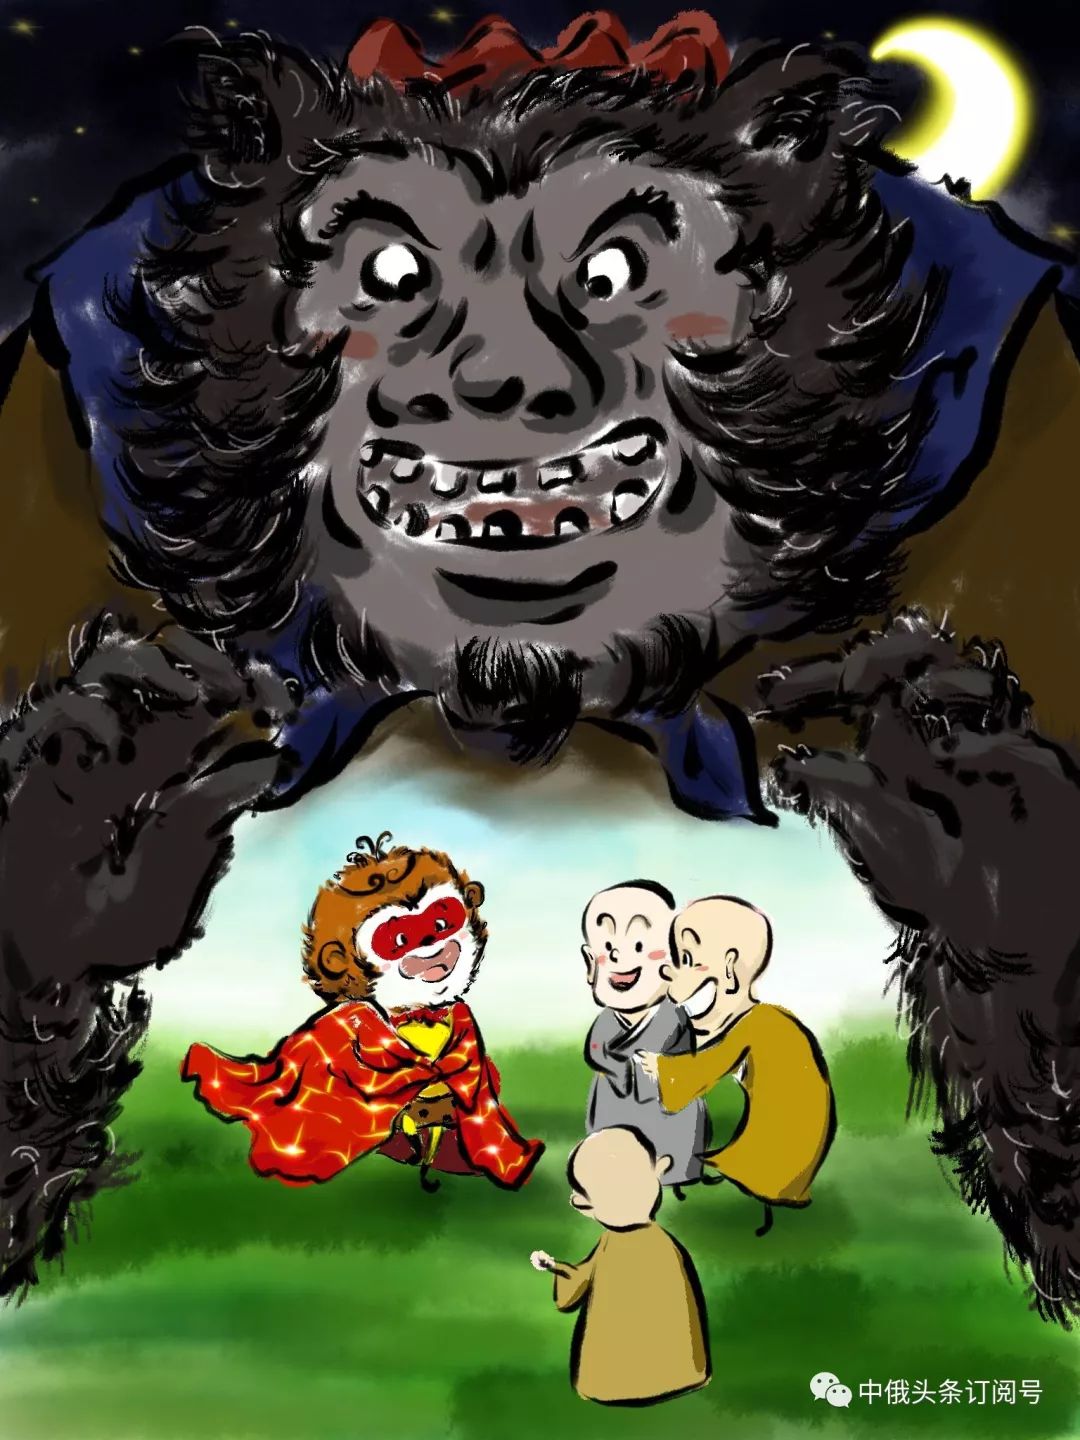 西游记俄文版第十五集偷袈裟的黑熊精